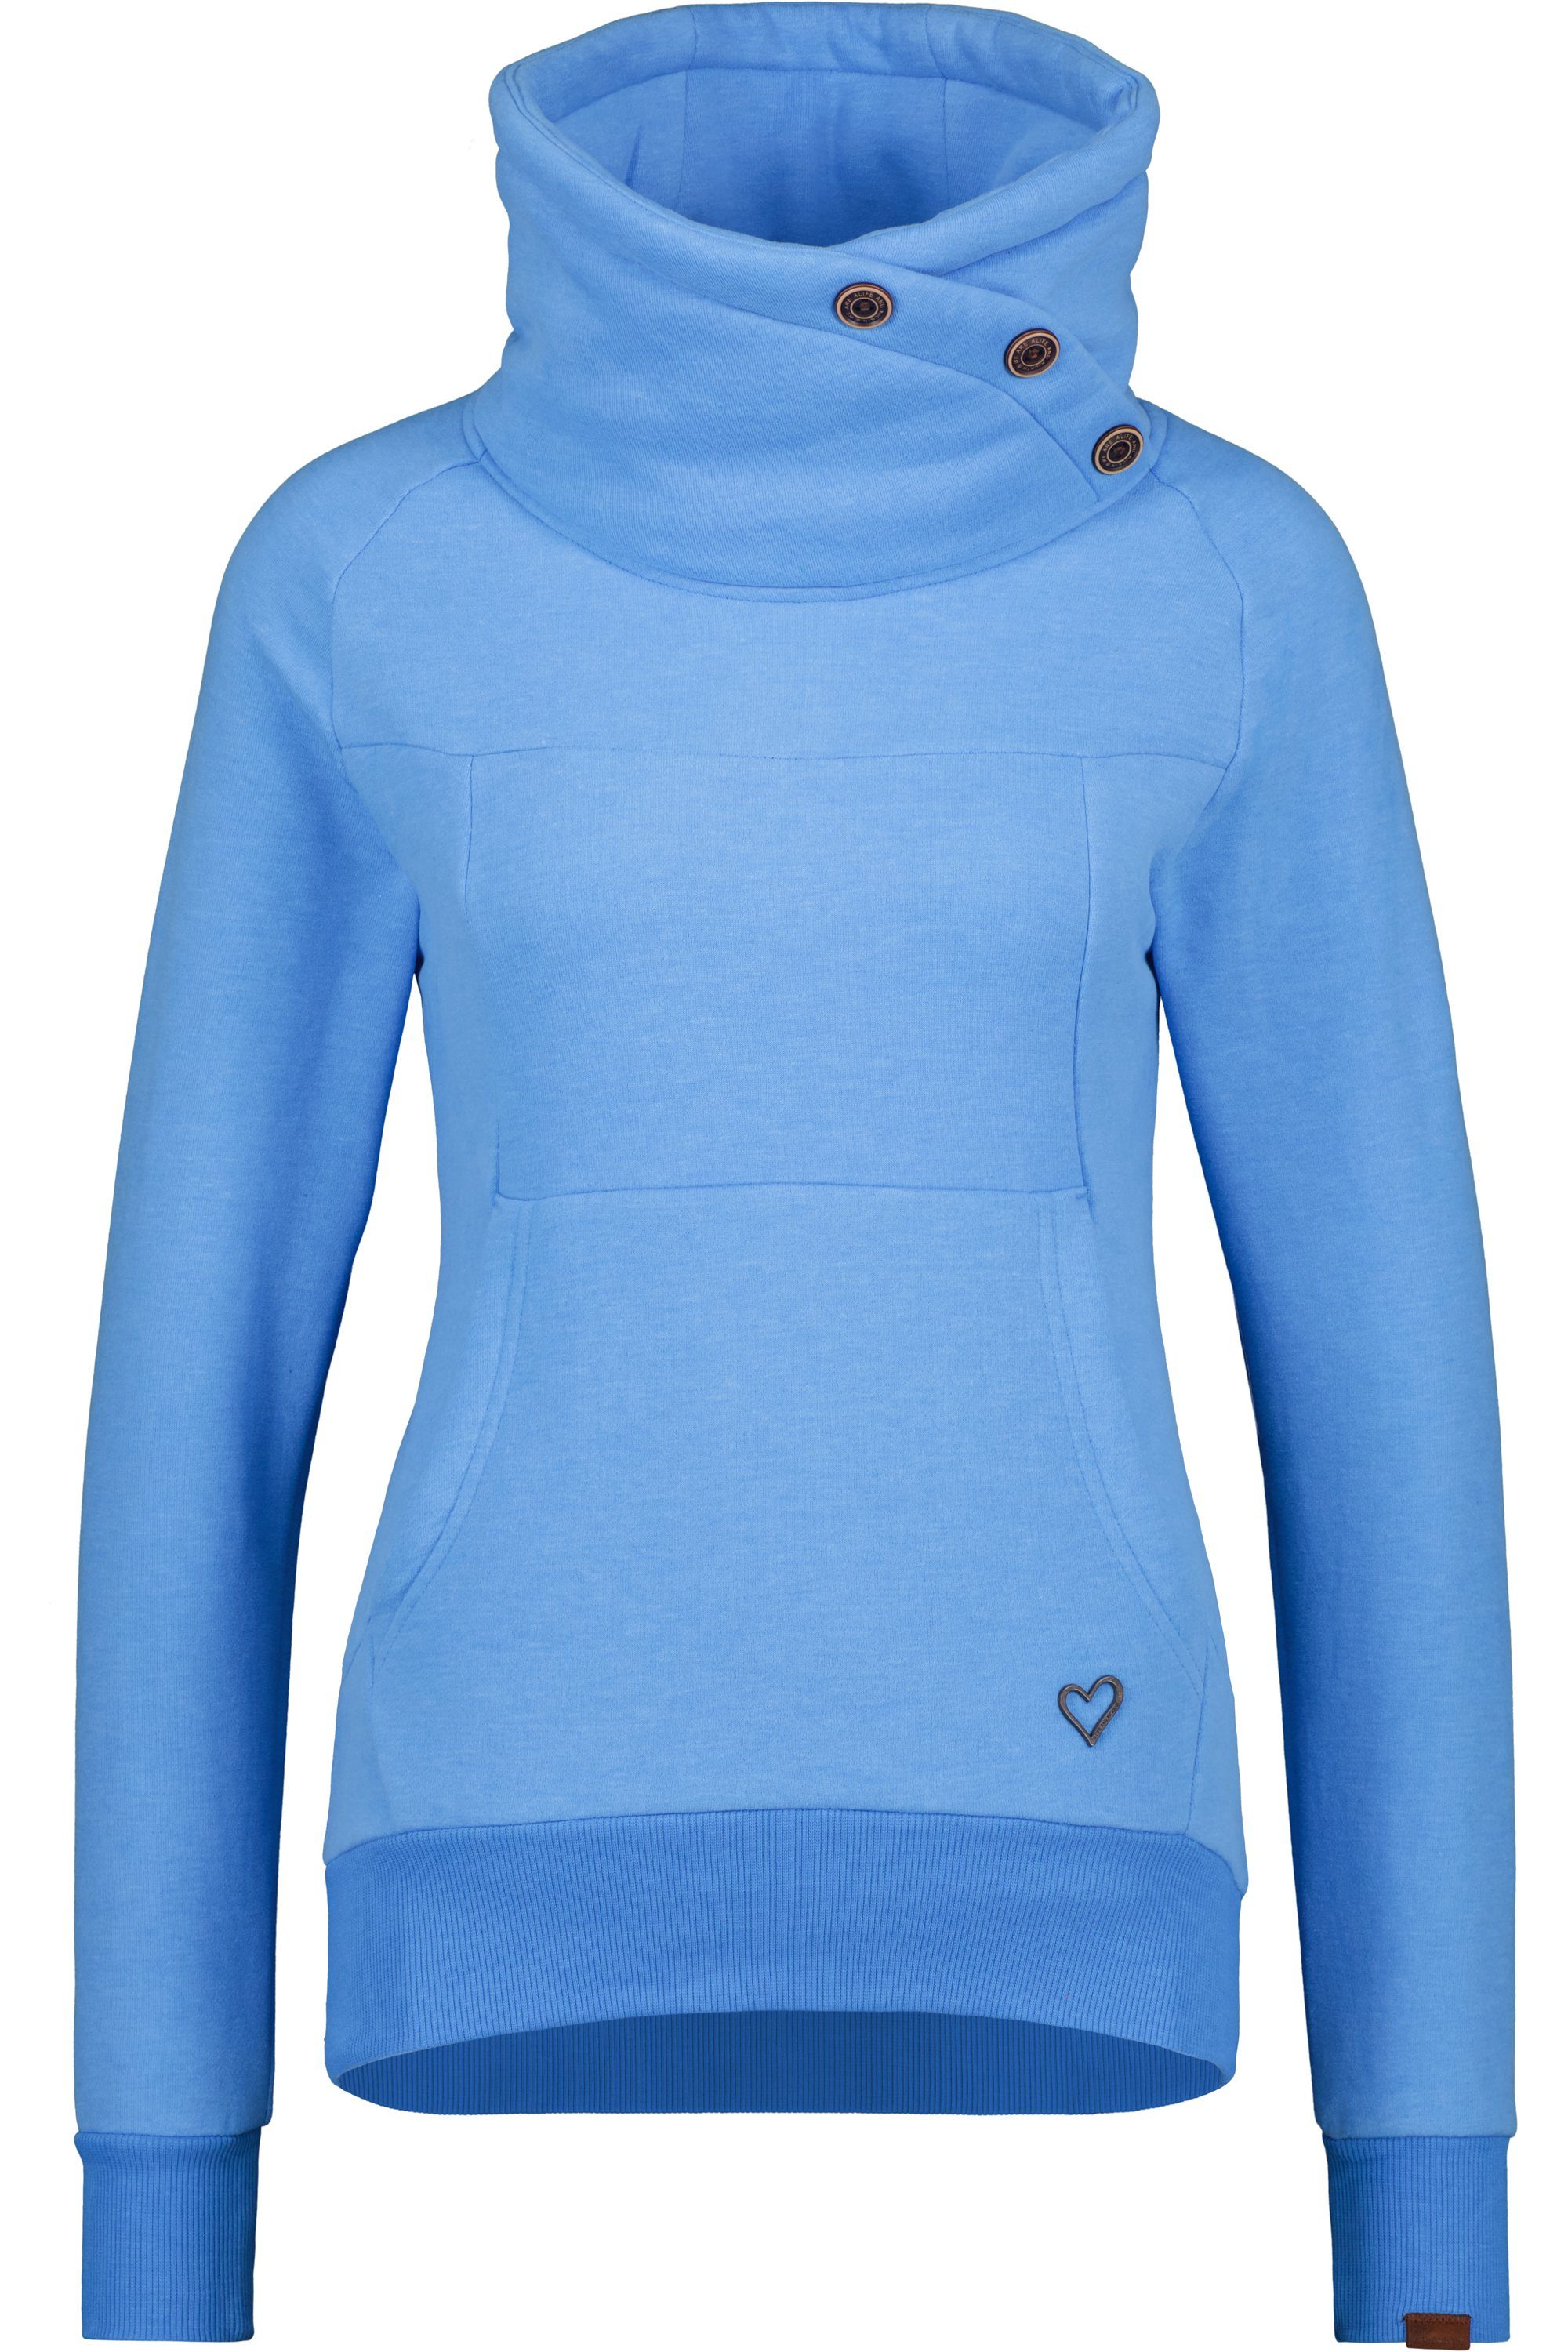 Alife & Kickin Sweatshirt Rundhalspullover, Pullover A azure Damen Sweatshirt VioletAK melange